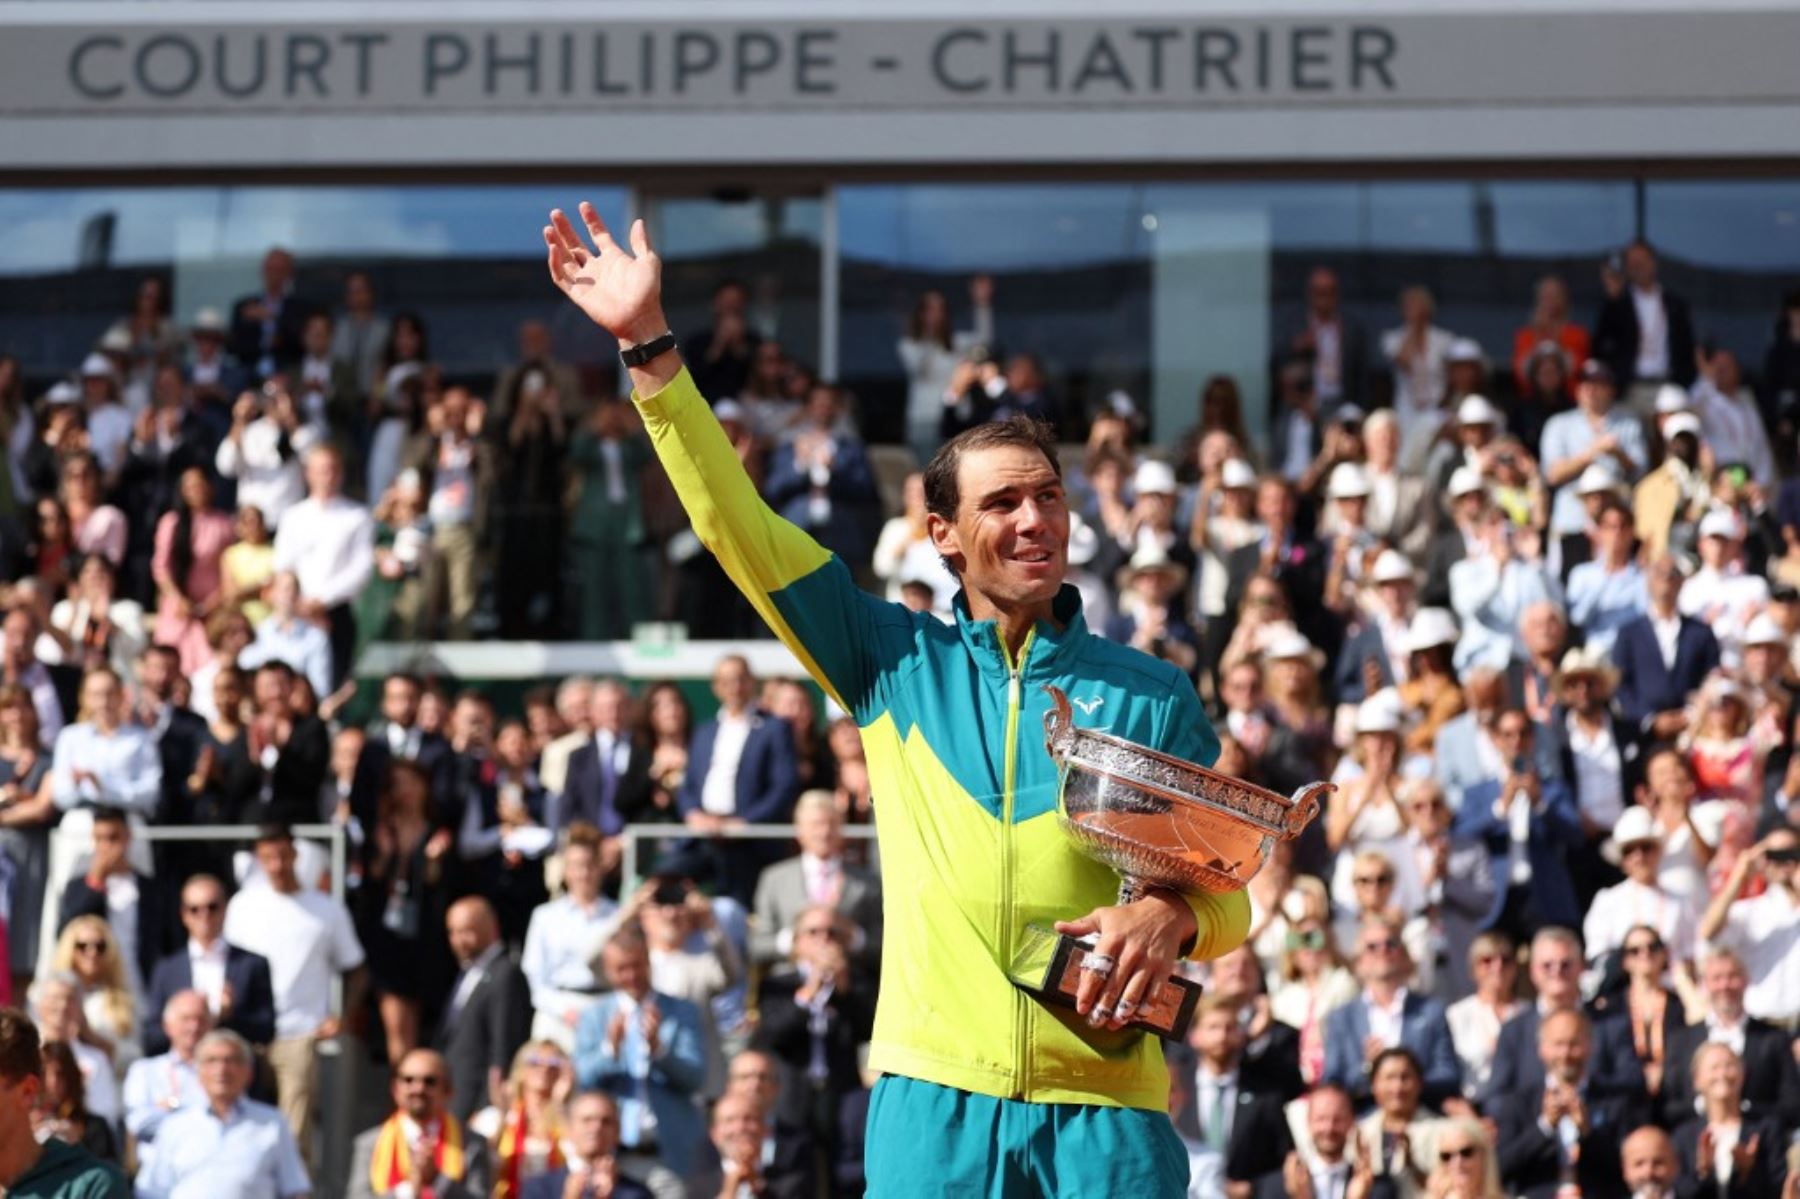 Nadal agranda su leyenda con su 14 Roland Garros y su 22 Grand Slam